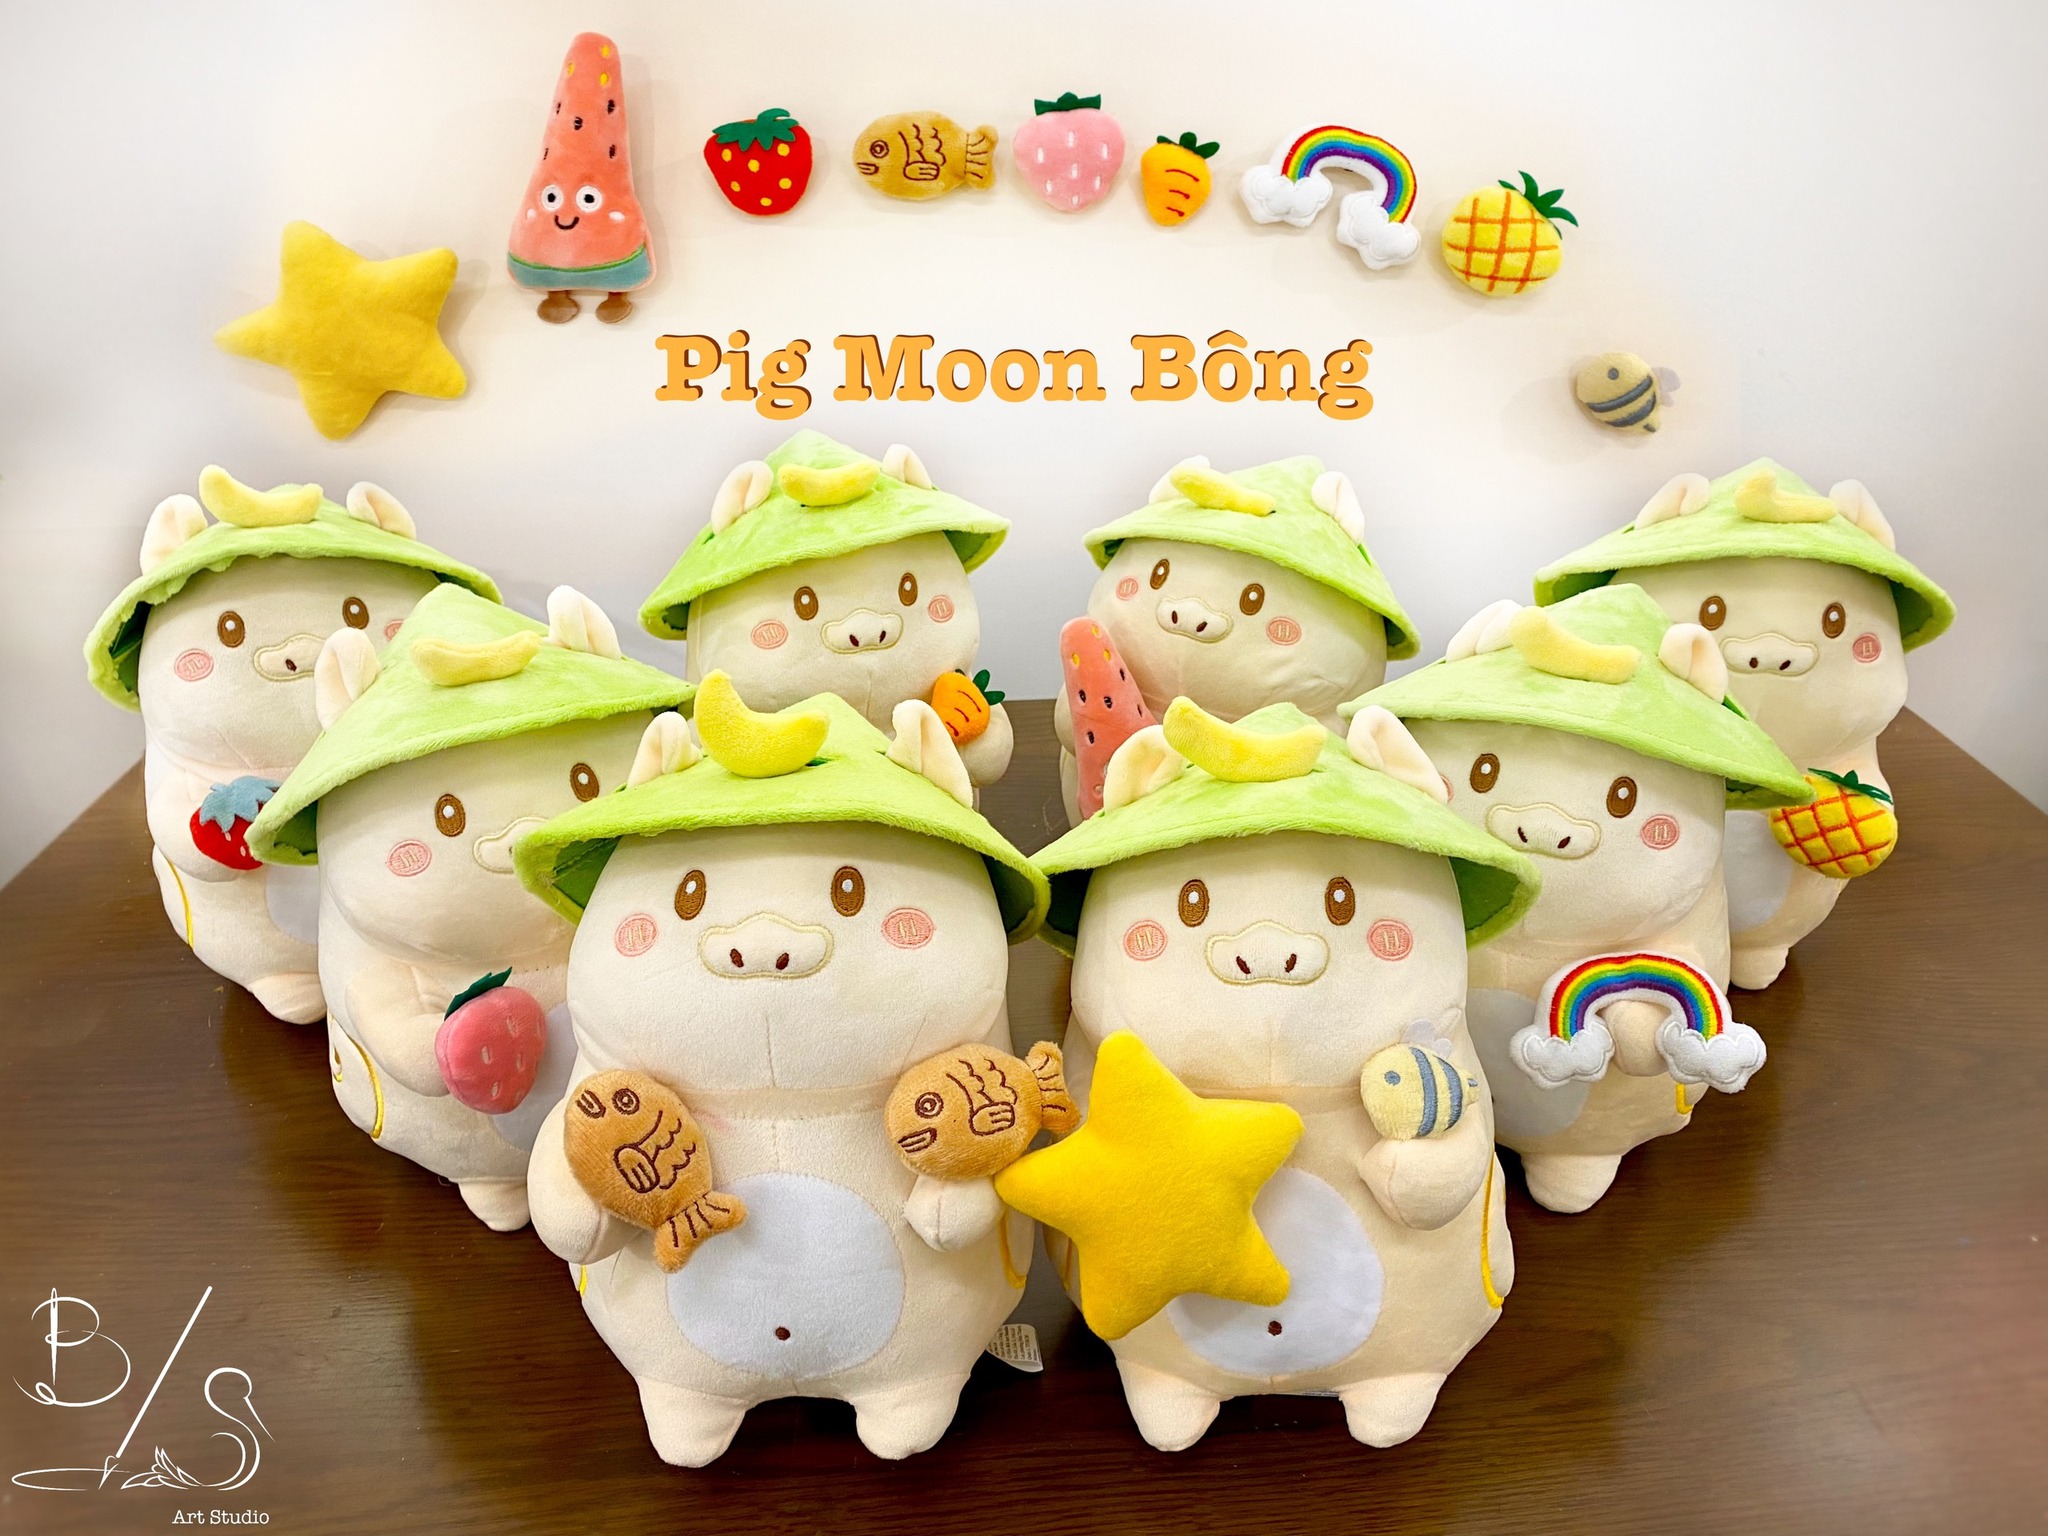 PIG MOON Bông – Người bạn đồng hành cùng tuổi thơ - Nhà sách Pig Moon - Pig Moon Bookstore - Thú nhồi bông - Gấu Bông